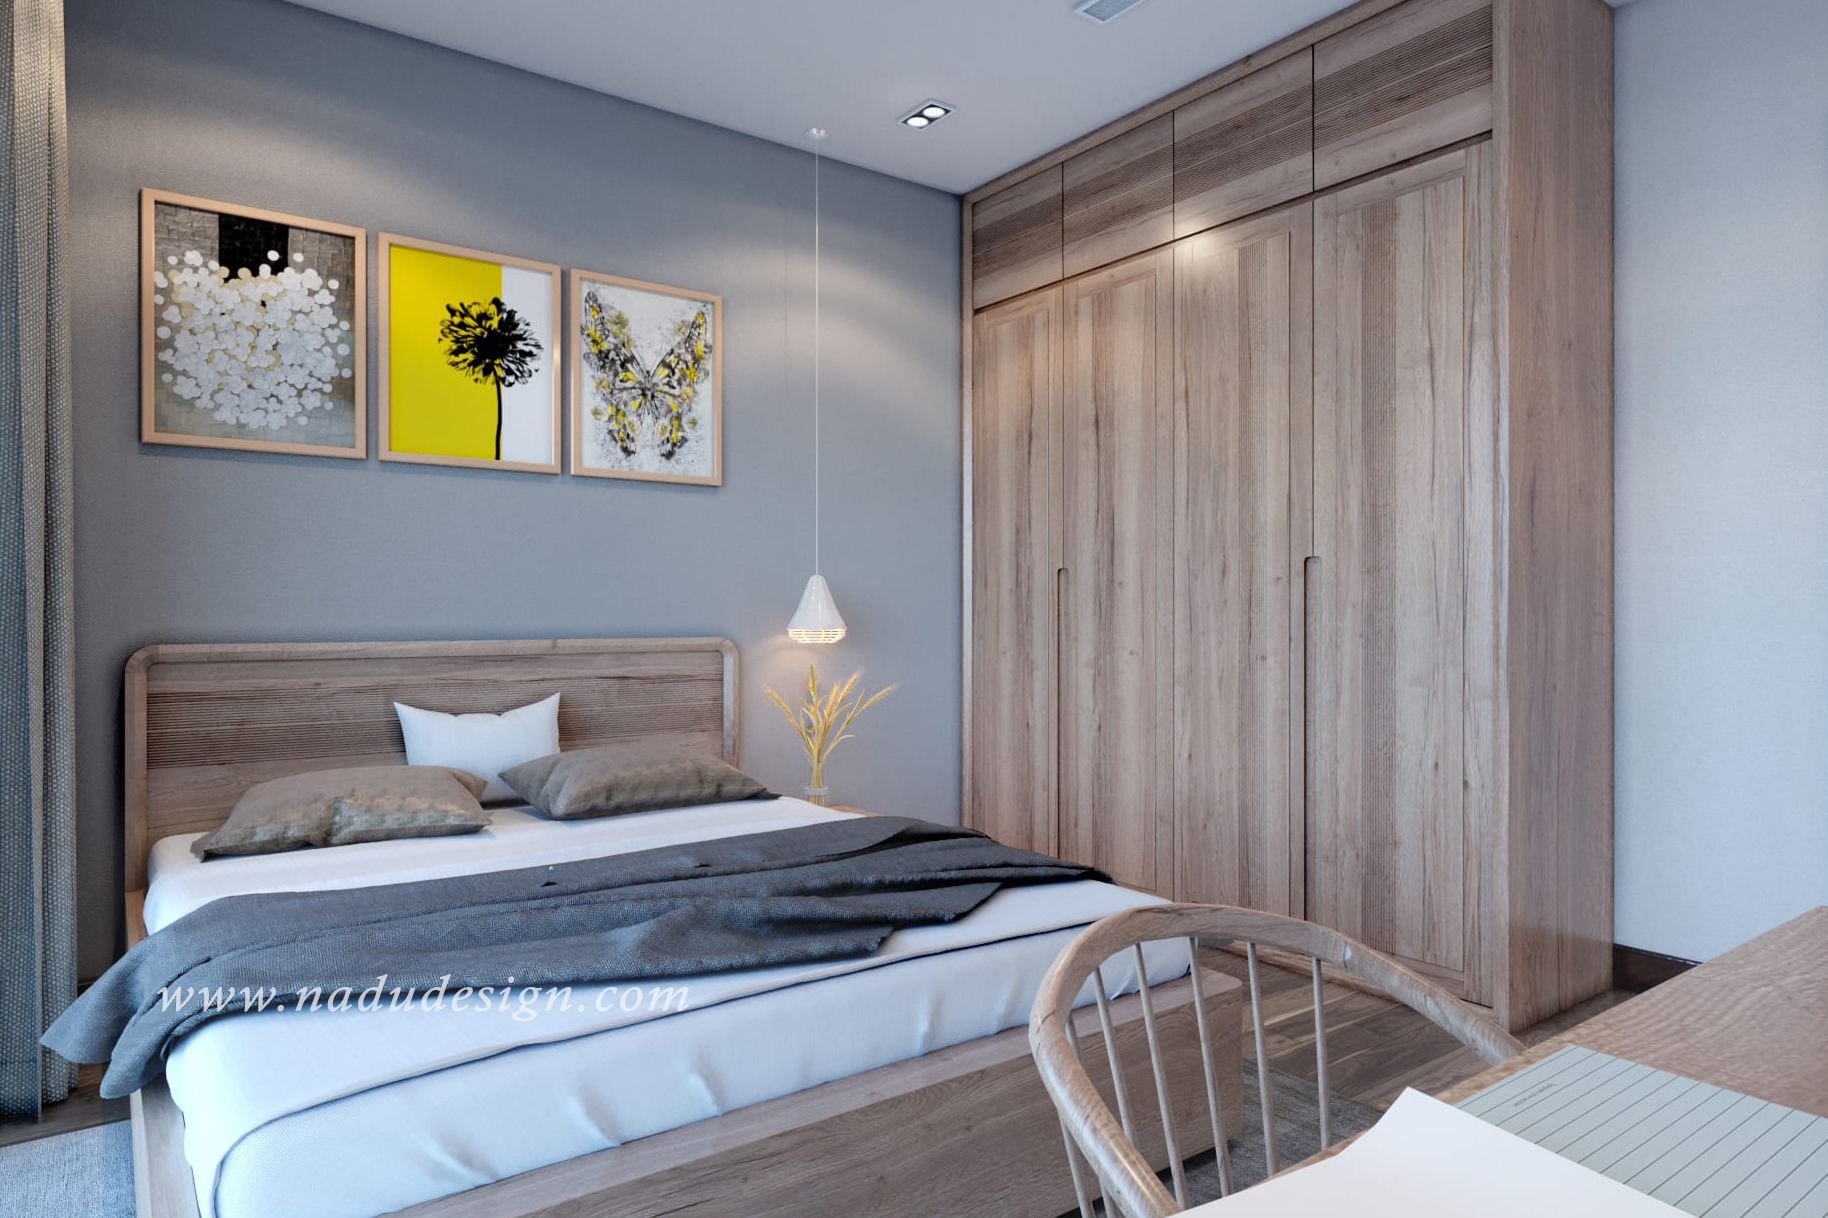 Bạn muốn có một căn phòng ngủ 25m2 độc đáo, khác biệt và sáng tạo? Hãy tham khảo những ý tưởng thiết kế nội thất từ chuyên gia để tạo ra một không gian riêng biệt và đầy tính thẩm mỹ. Bạn sẽ bất ngờ với những chi tiết độc đáo và sáng tạo mà chúng tôi cung cấp.